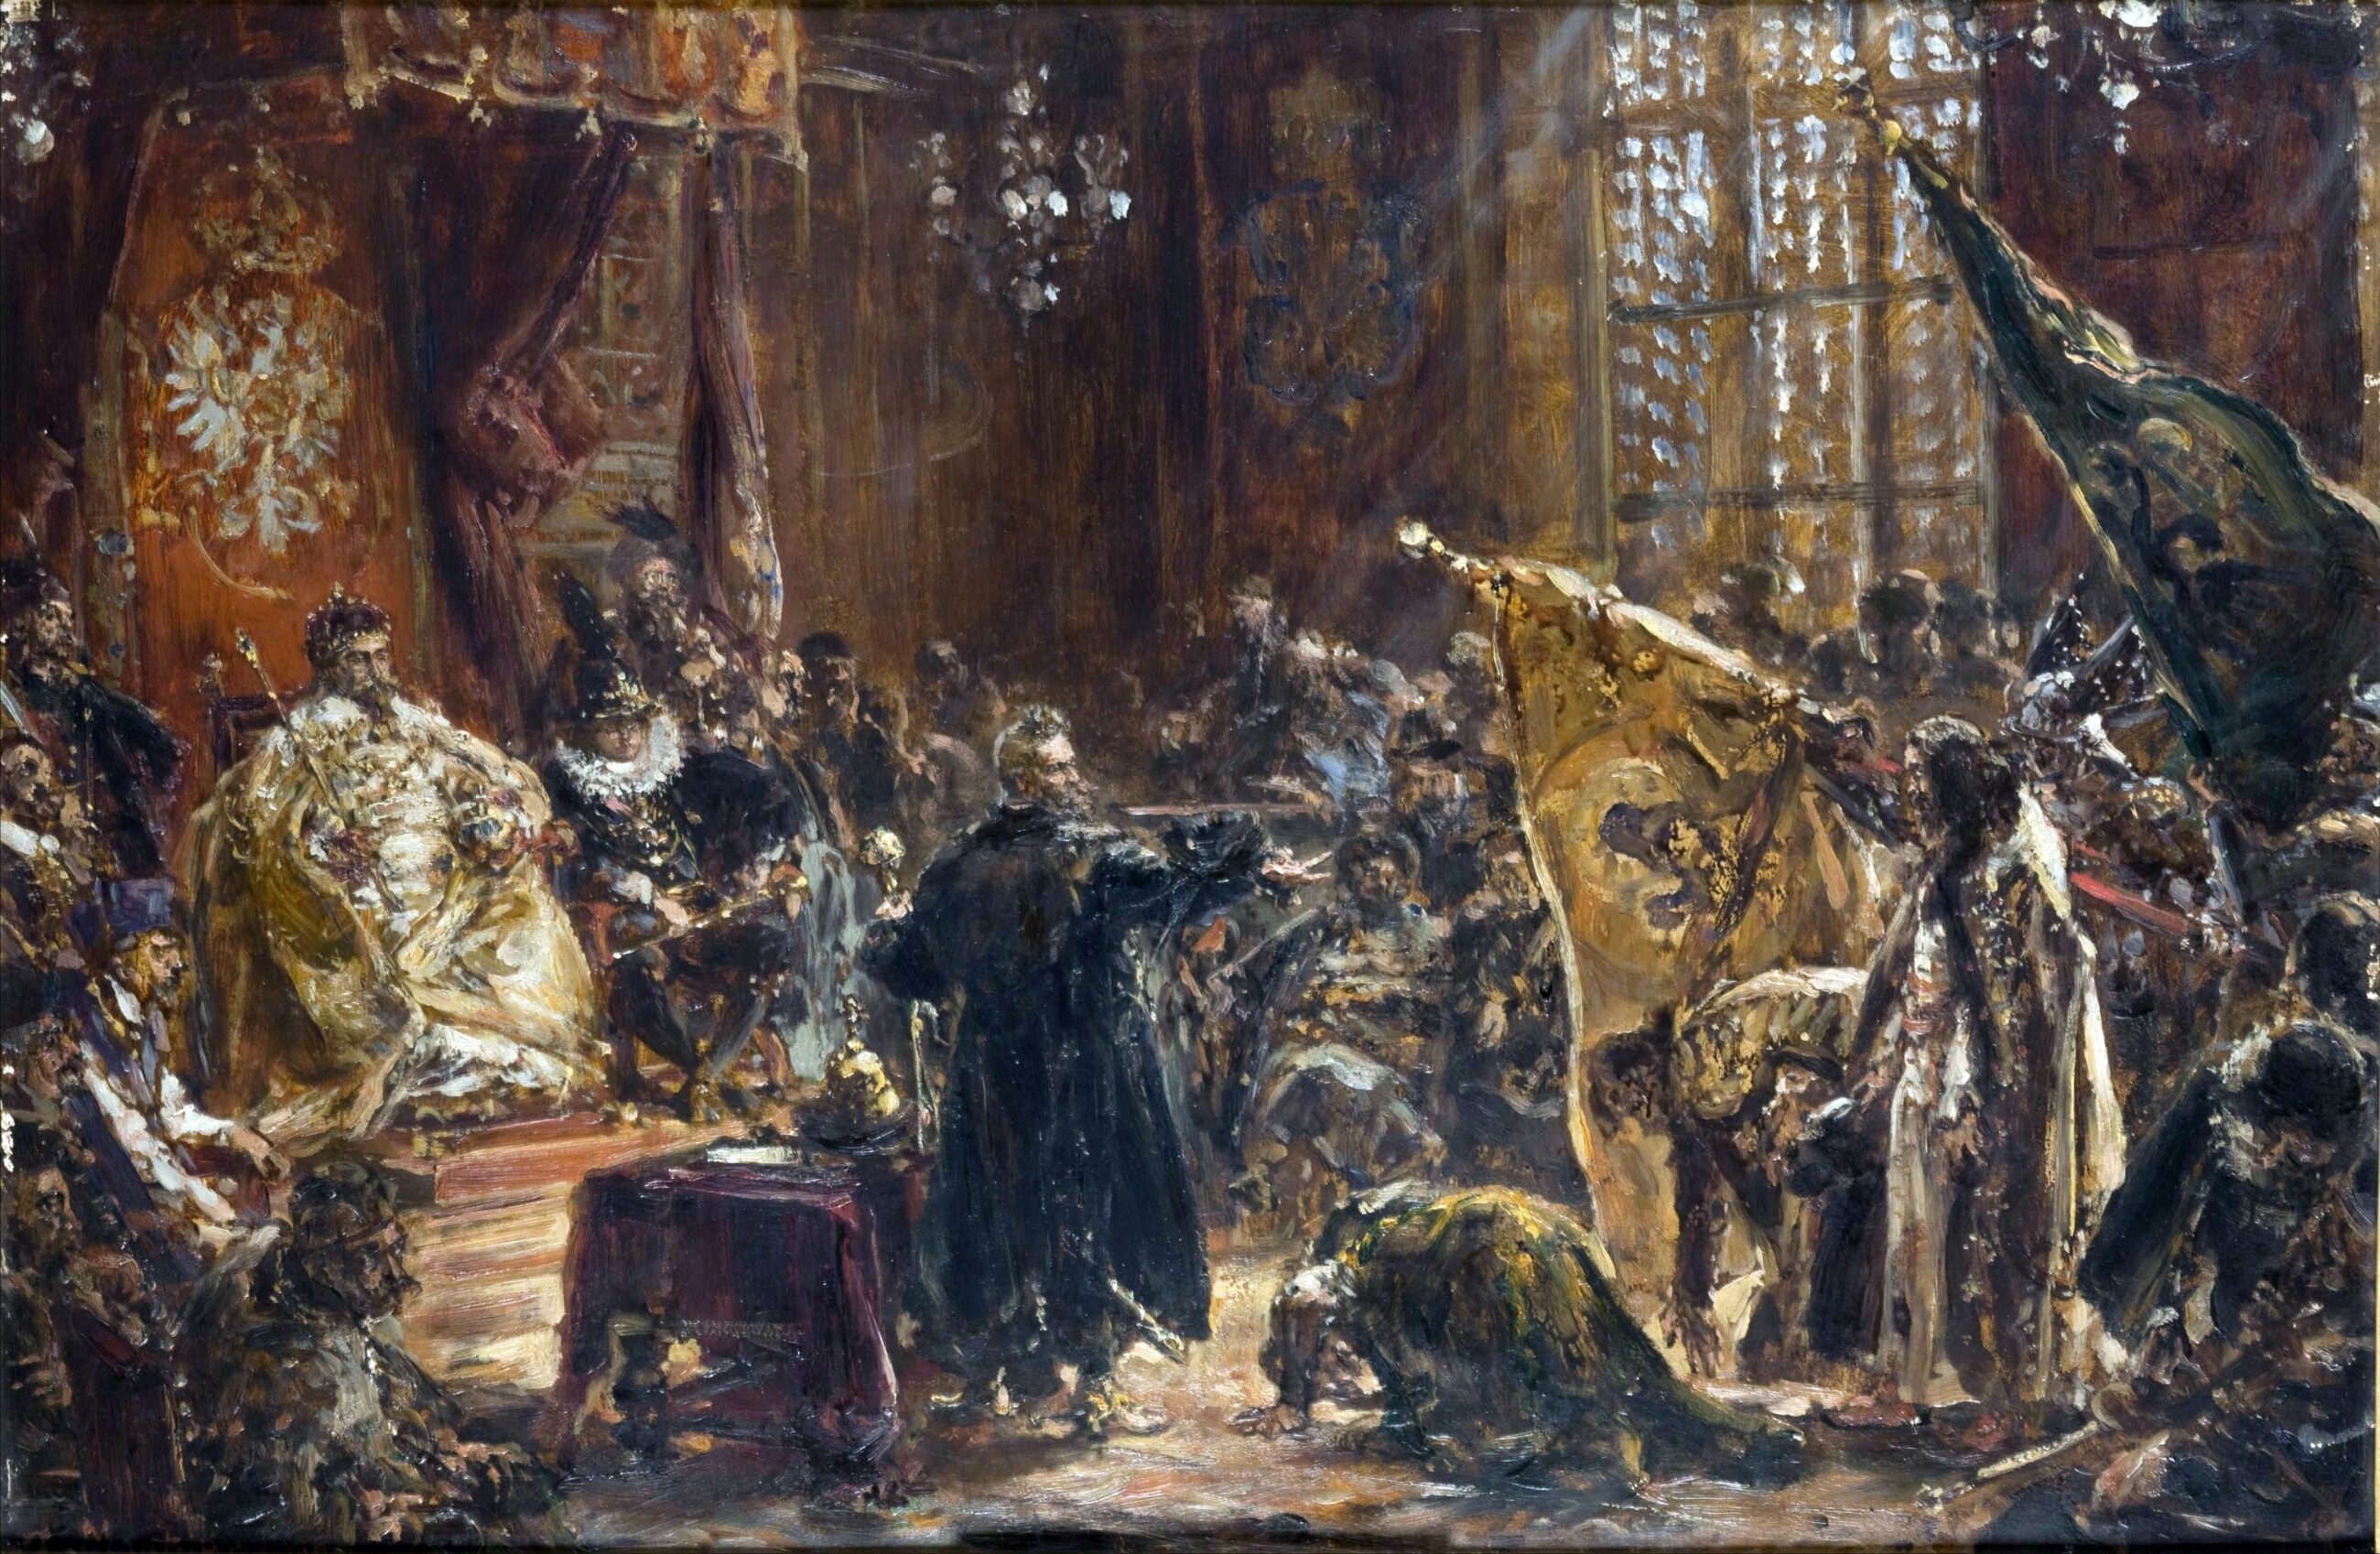 Obraz przedstawia pokłon byłego cara Wasyla IV Szujskiego z braćmi przed królem: